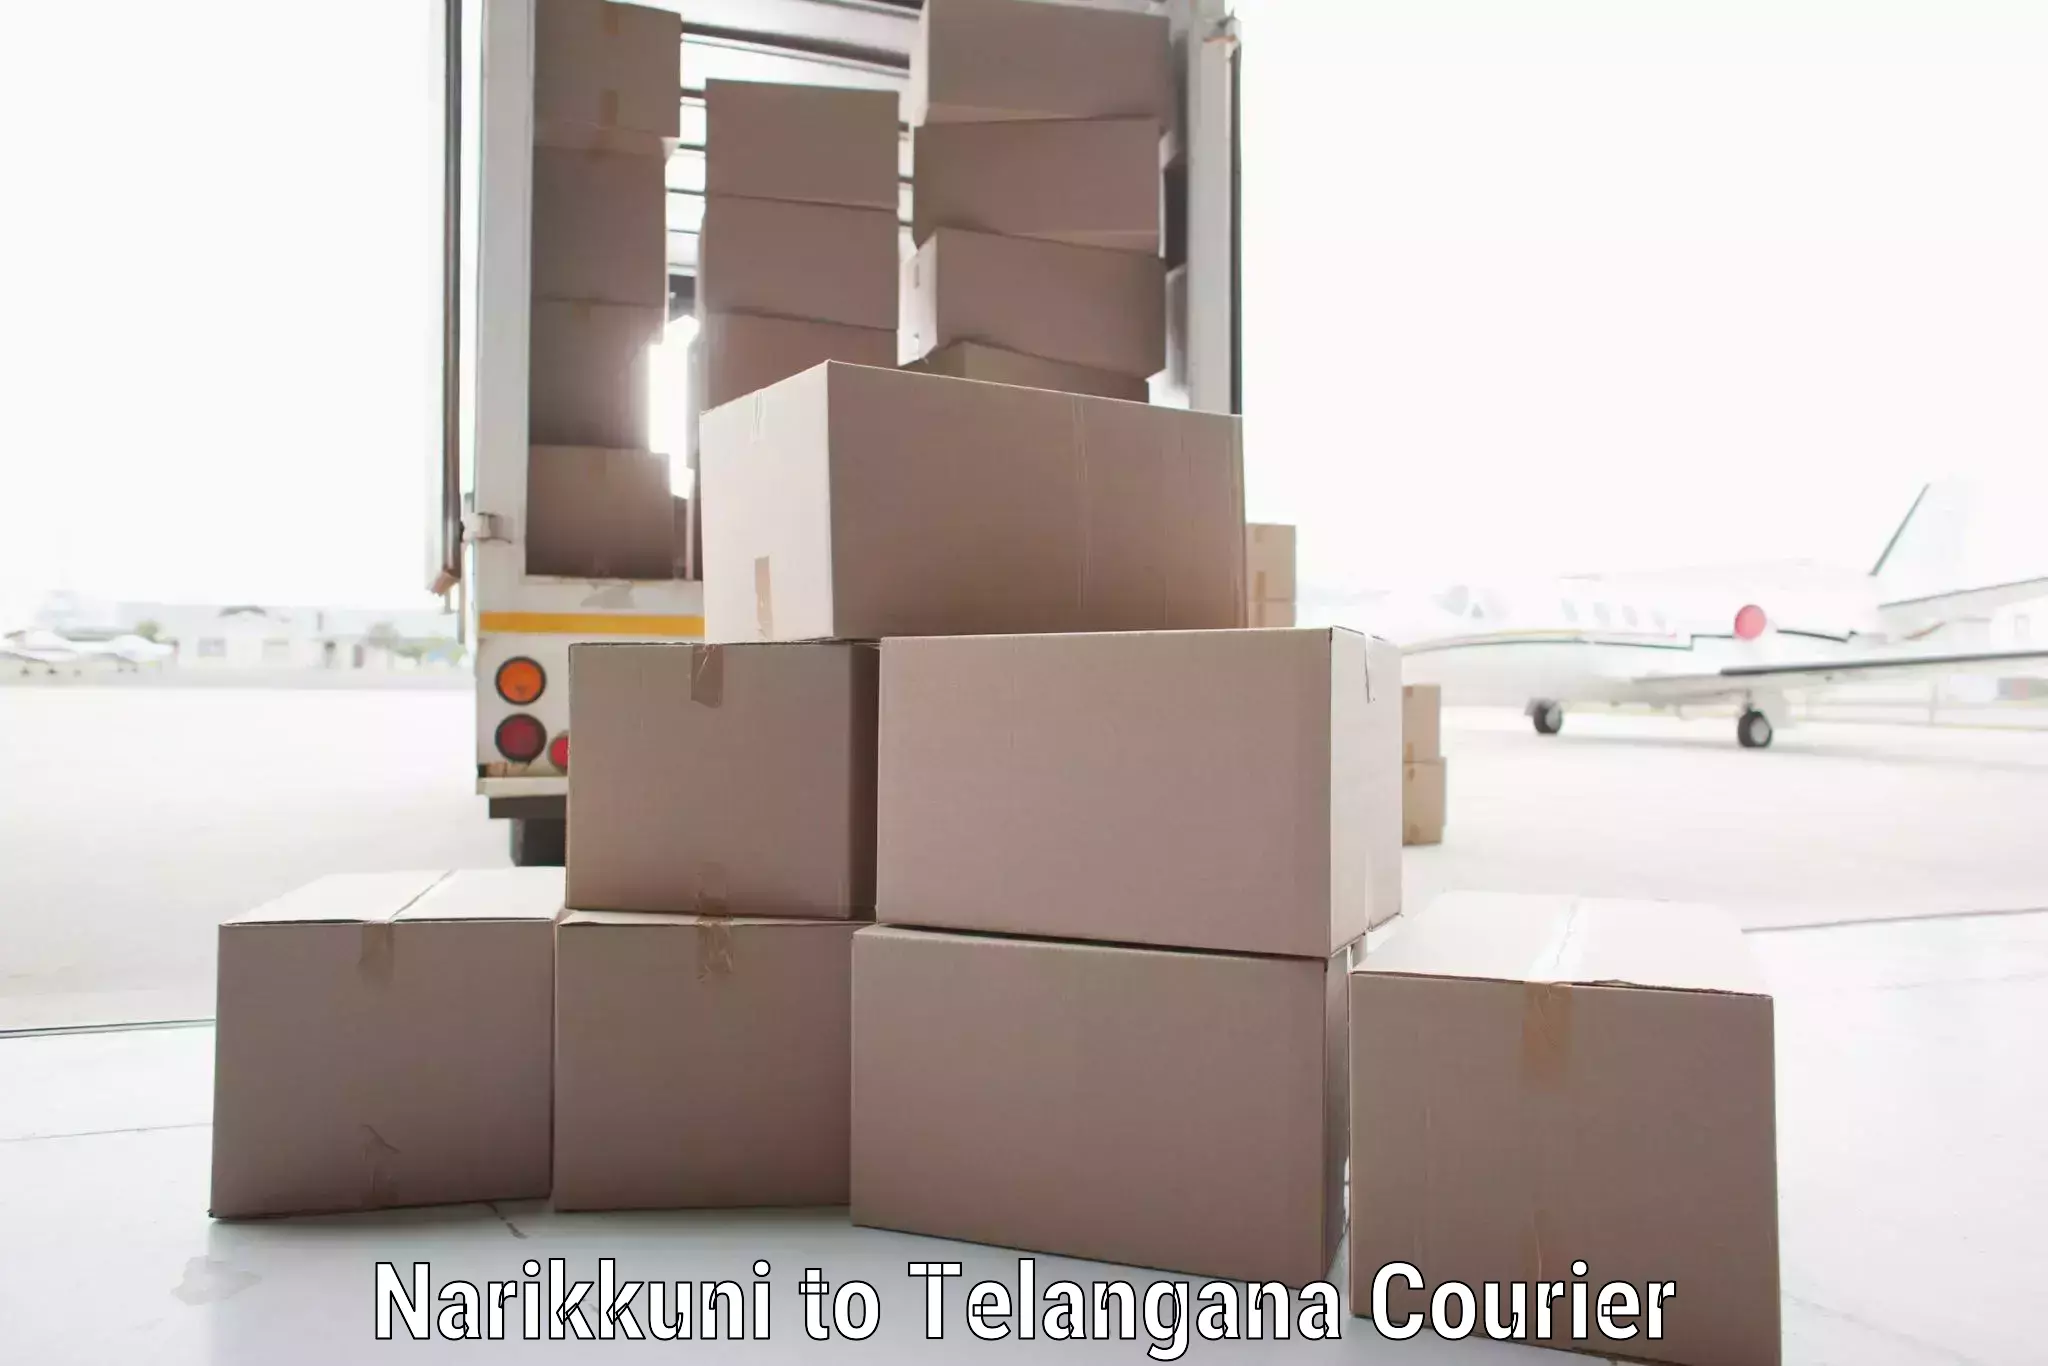 Digital shipping tools Narikkuni to Nalgonda